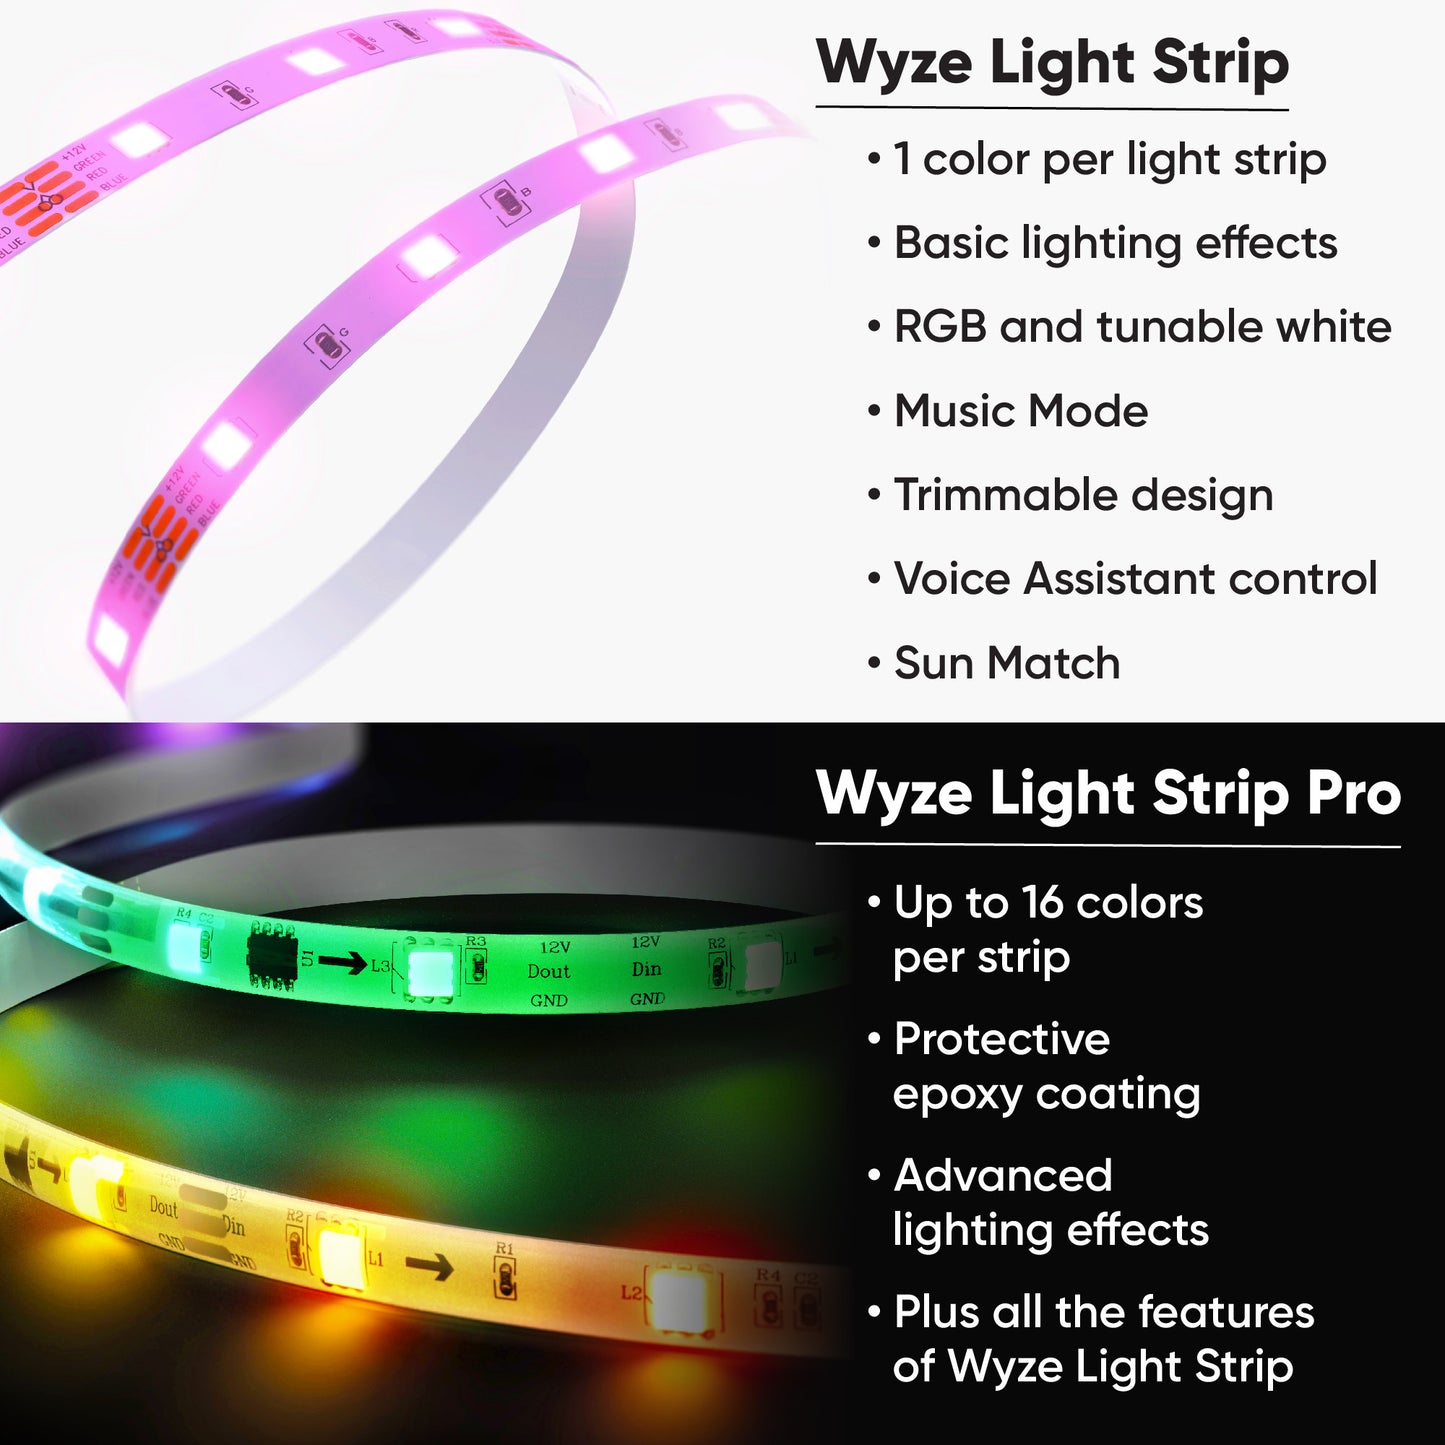 Wyze Light Strip Pro